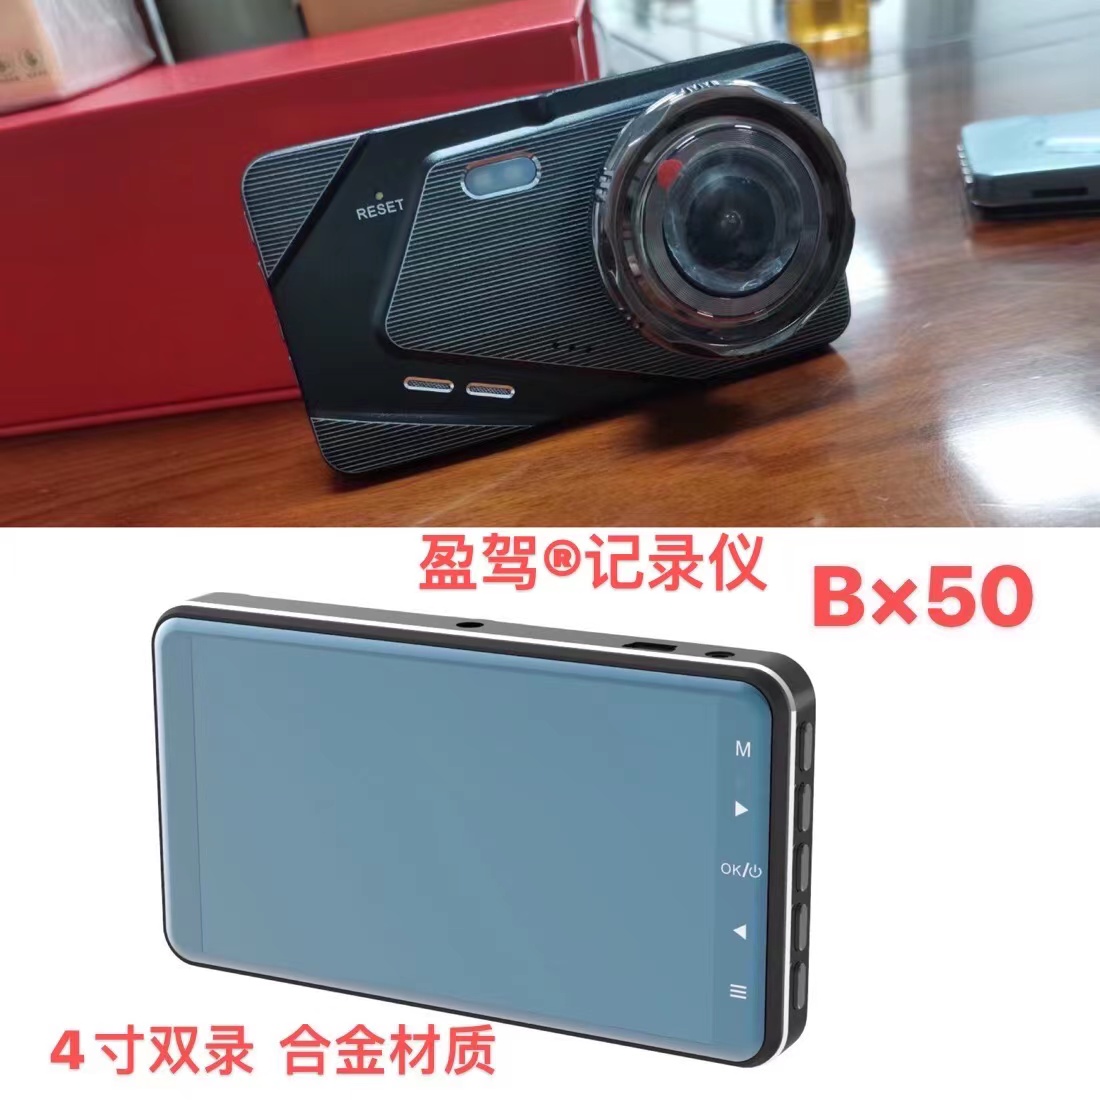 Fordonskamera --YJ varumärke -- ny produkt -- BX50 introduceras